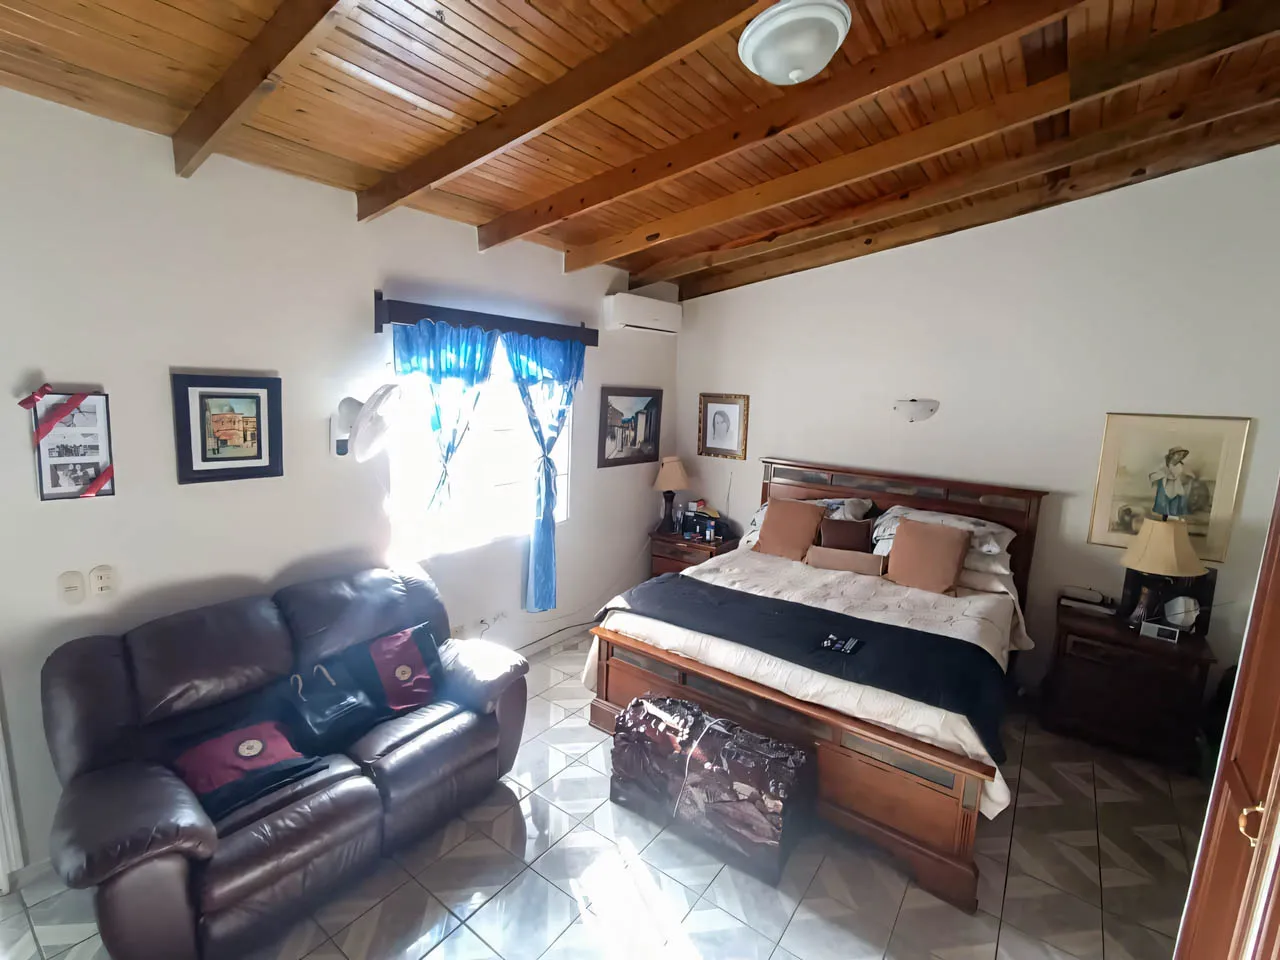 Una de las habitaciones cuenta con una amplia cama matrimonial, un sofá de cuerina, una ventana con cortinas de color azul que permiten una hermosa iluminación al interior.